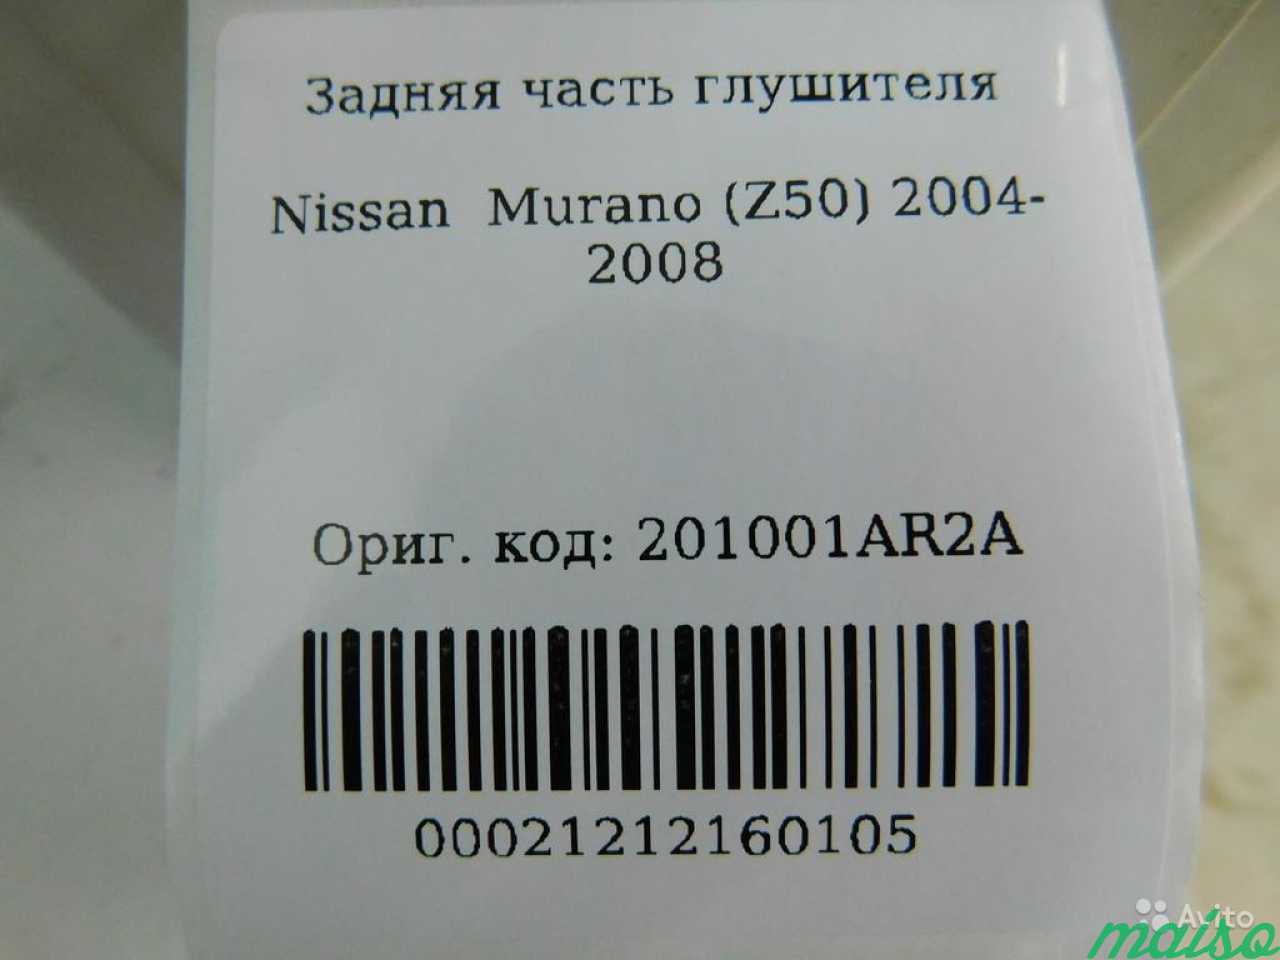 Задняя часть глушителя Ниссан Мурано 2004-2008 в Санкт-Петербурге. Фото 4